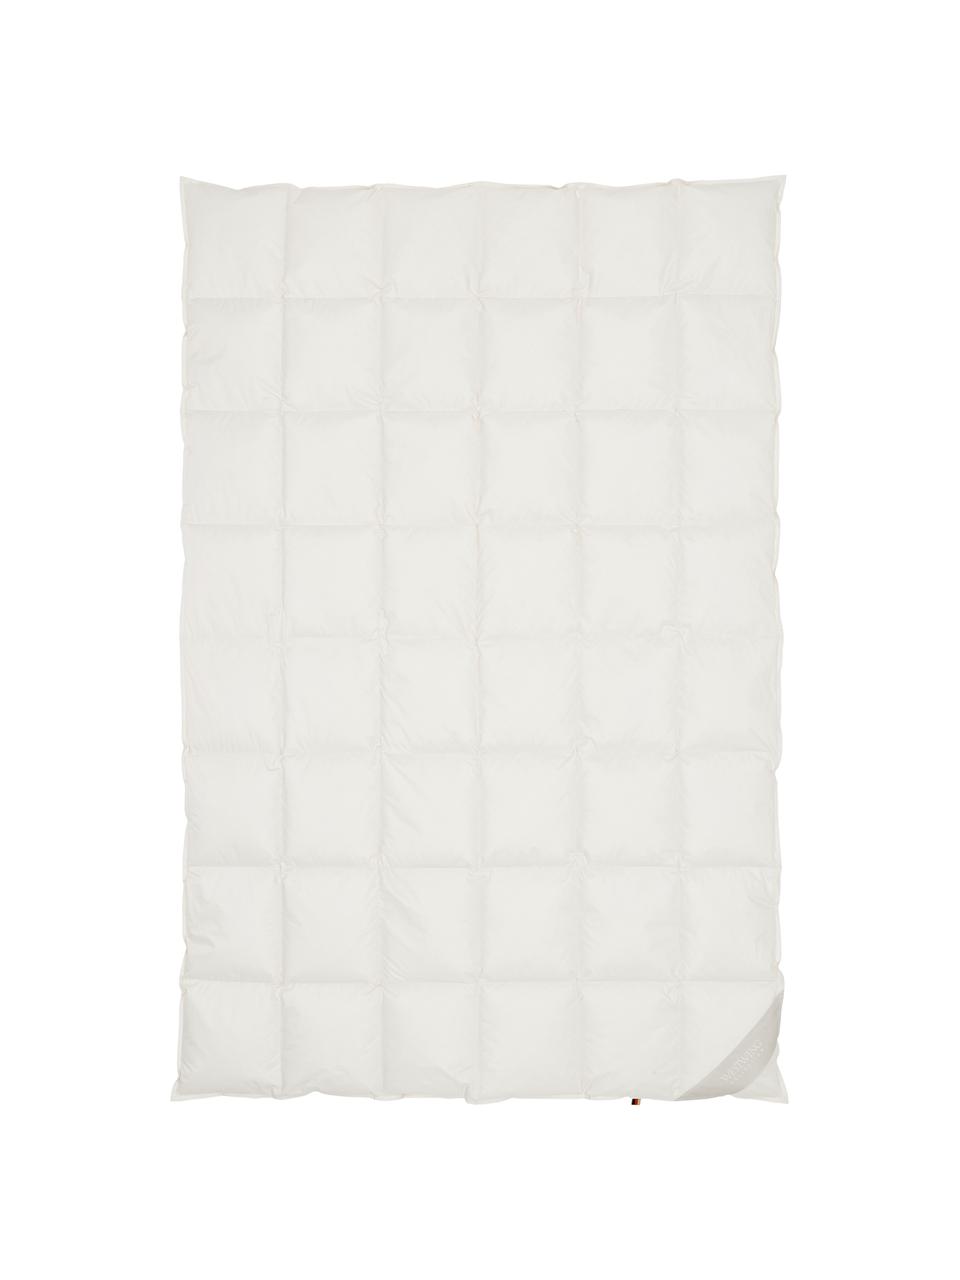 Bettdecke Premium aus Bio-Daunen und Bio-Baumwolle, leicht, Bezug: 100% Bio-Baumwolle, GOTS , Beige, 240 x 220 cm